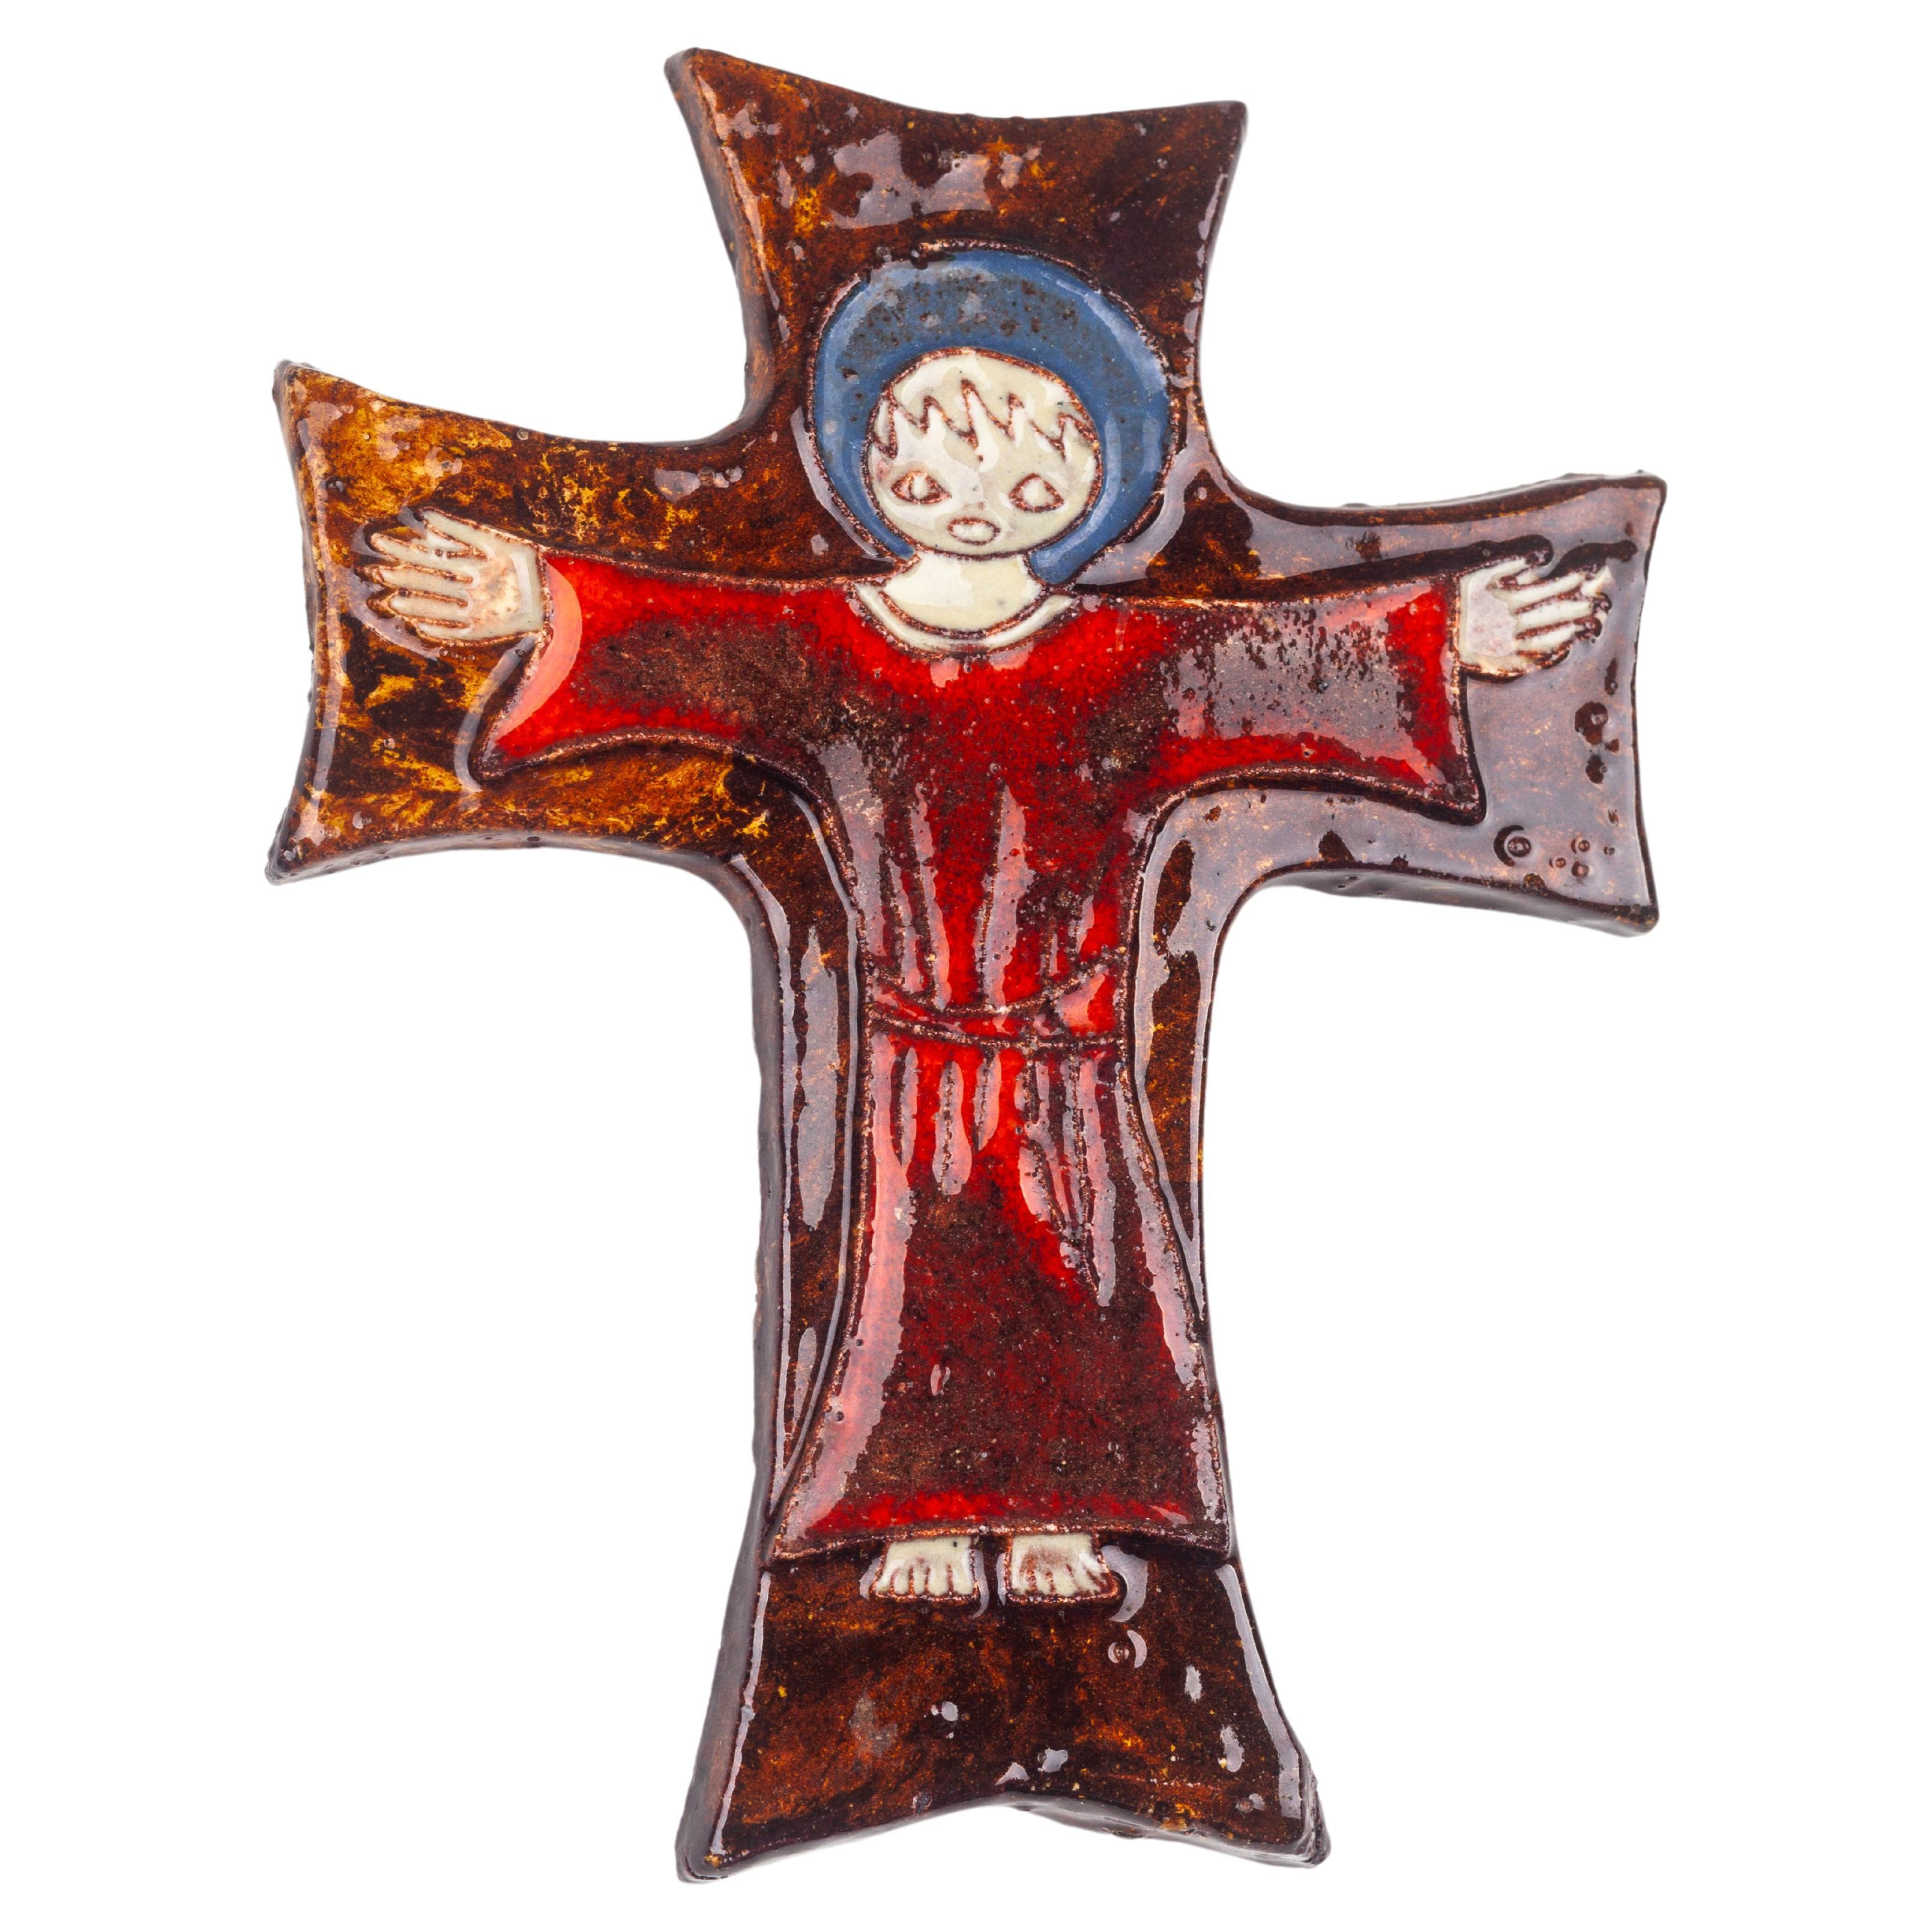 Cette croix en céramique, fabriquée à la main par des artisans potiers dans l'Europe du milieu du siècle dernier, présente une scène figurative stylisée dans ses limites, évoquant la riche tradition de l'art religieux réimaginé à travers la lentille